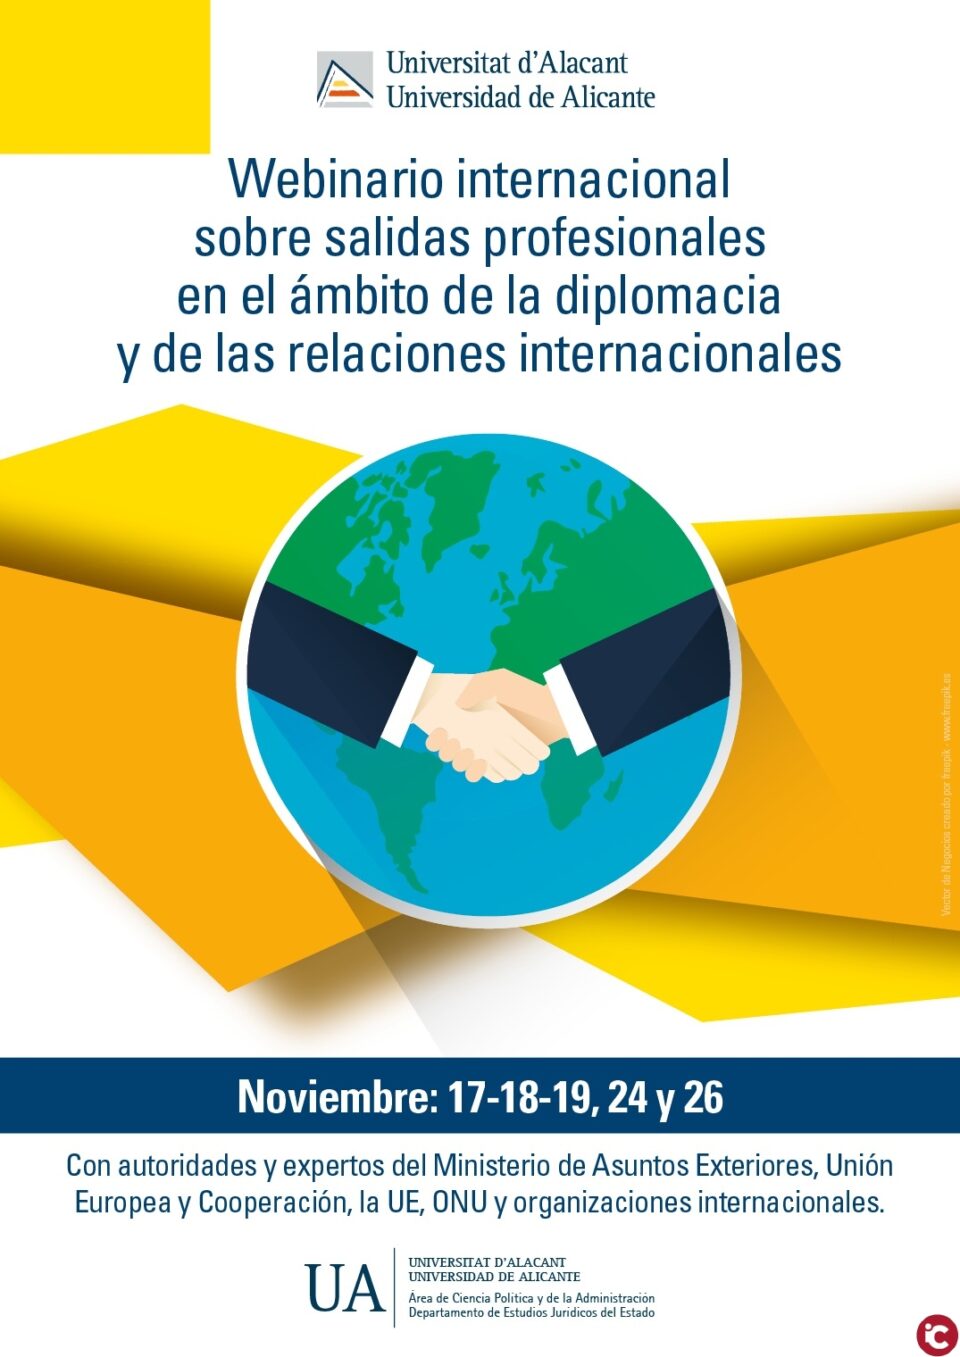 La Universitat d'Alacant organitza un webinar internacional sobre eixides professionals en l'àmbit de la diplomàcia i de les relacions internacionals